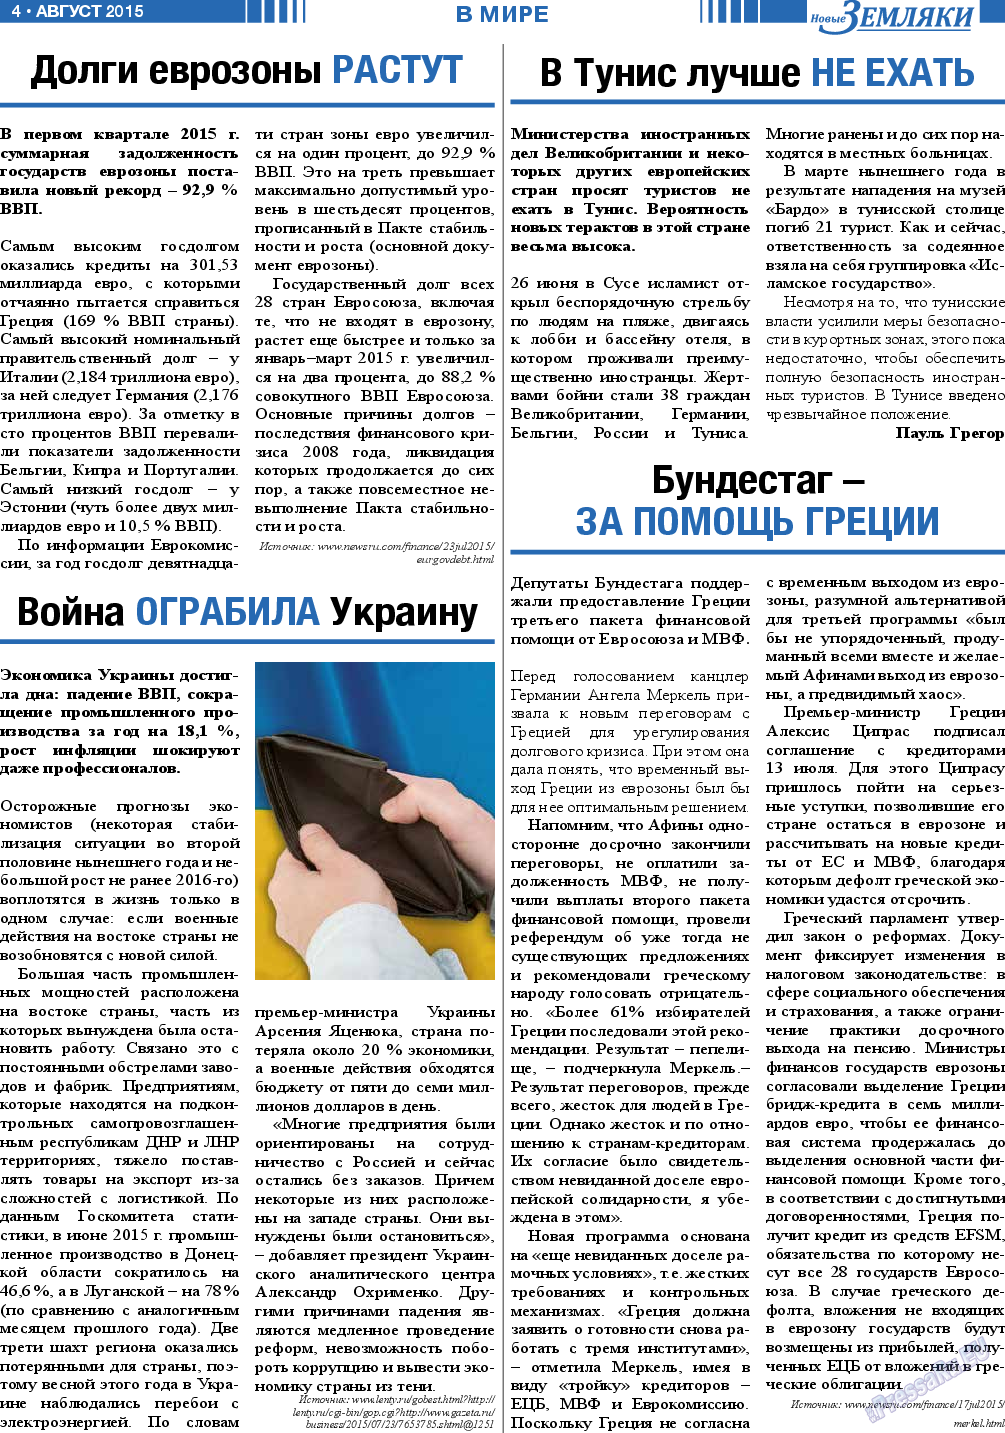 Новые Земляки, газета. 2015 №8 стр.4